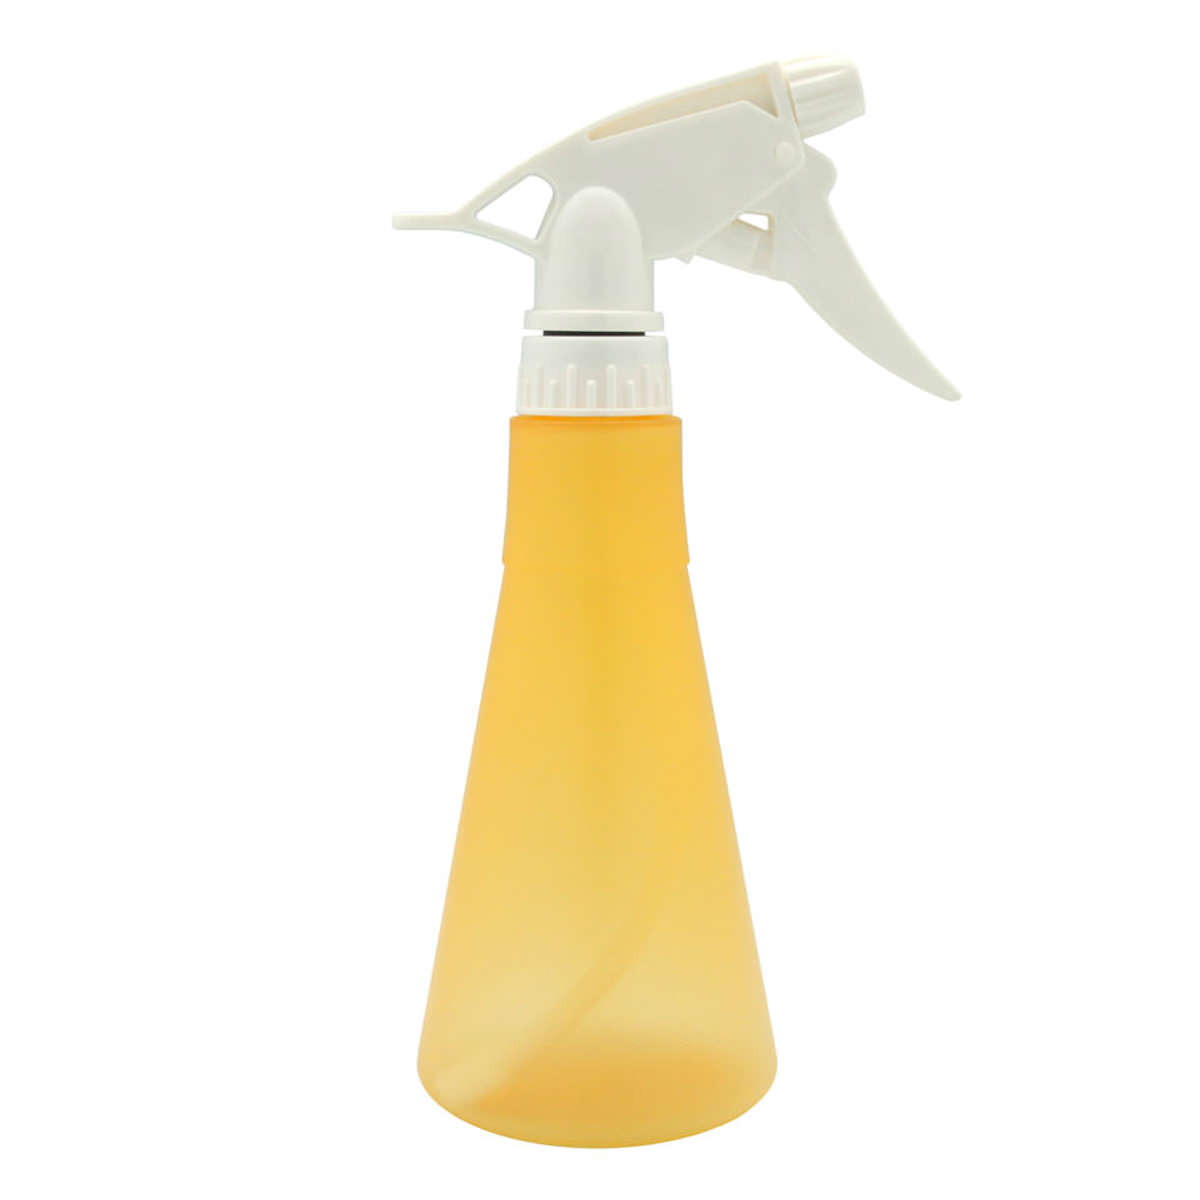 Botol-Spray-V050-sfw(1)